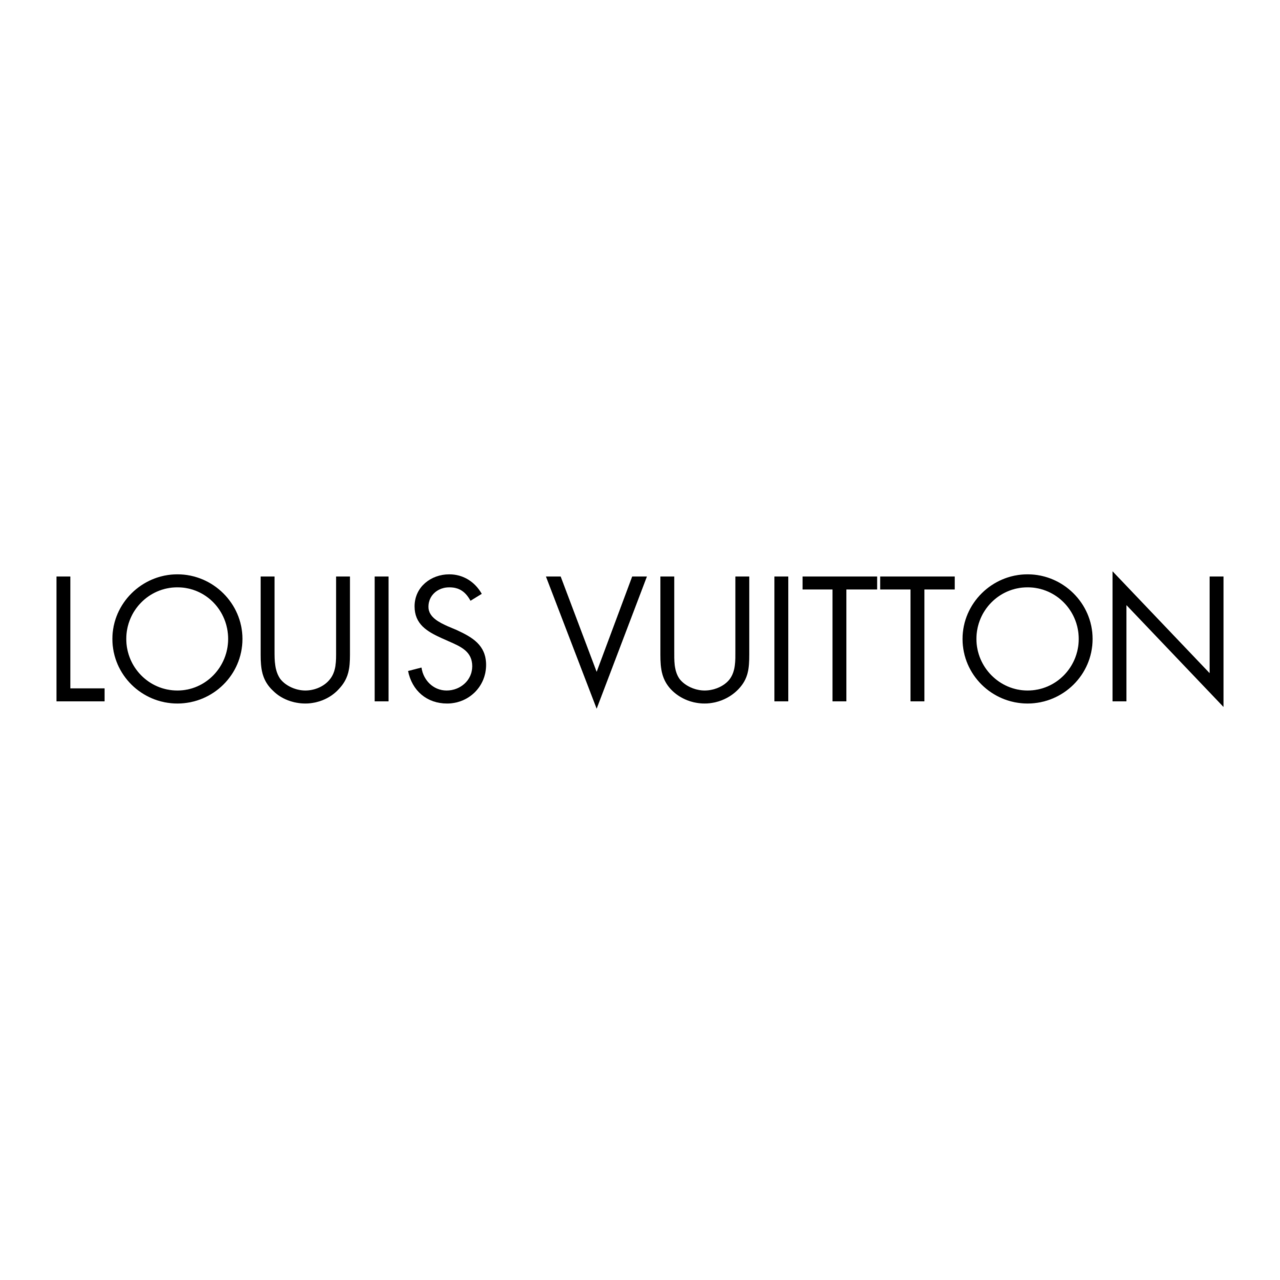 Louis Vuitton Logo Transparent Image